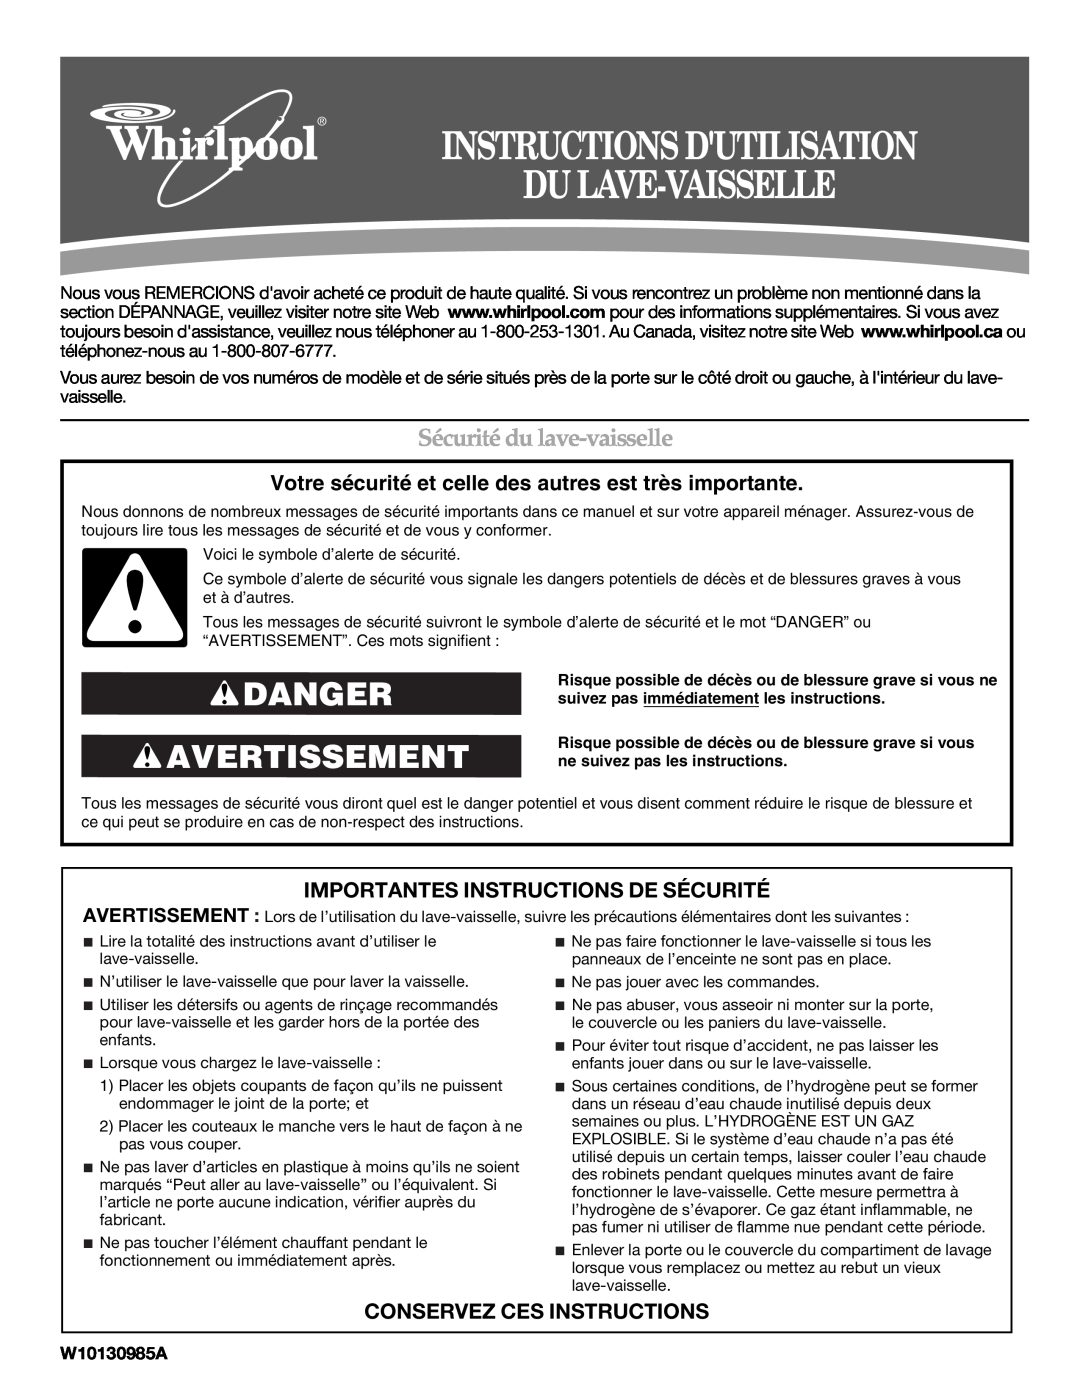 Whirlpool W10130985A Instructions Dutilisation Du Lave-Vaisselle, Danger Avertissement, Sécurité du lave-vaisselle 